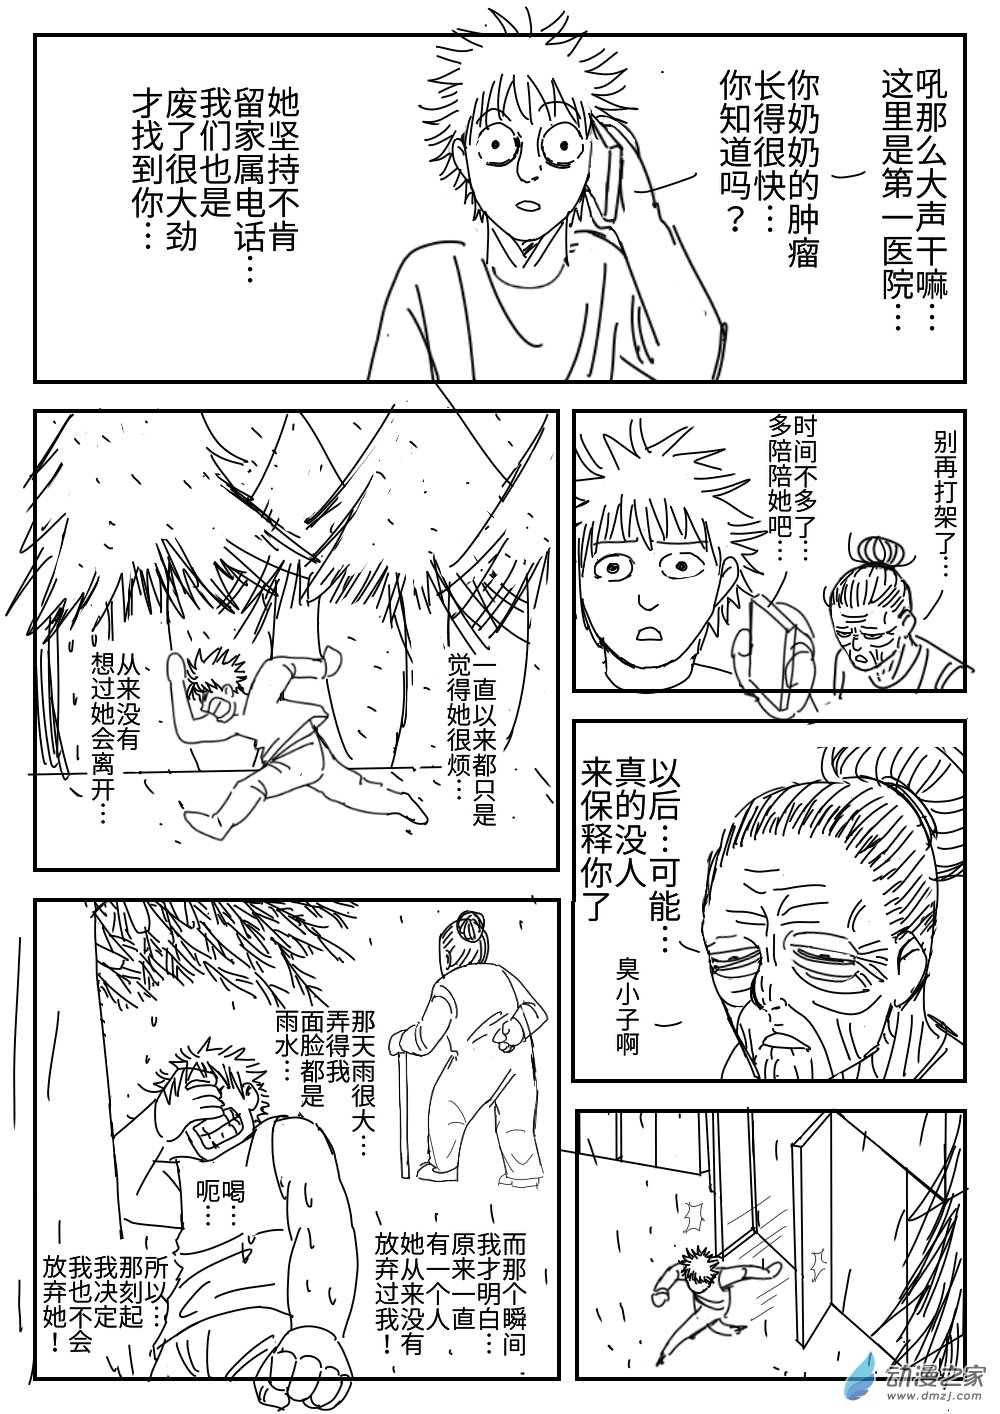 K神的短篇漫畫集 - 04 越獄 - 2